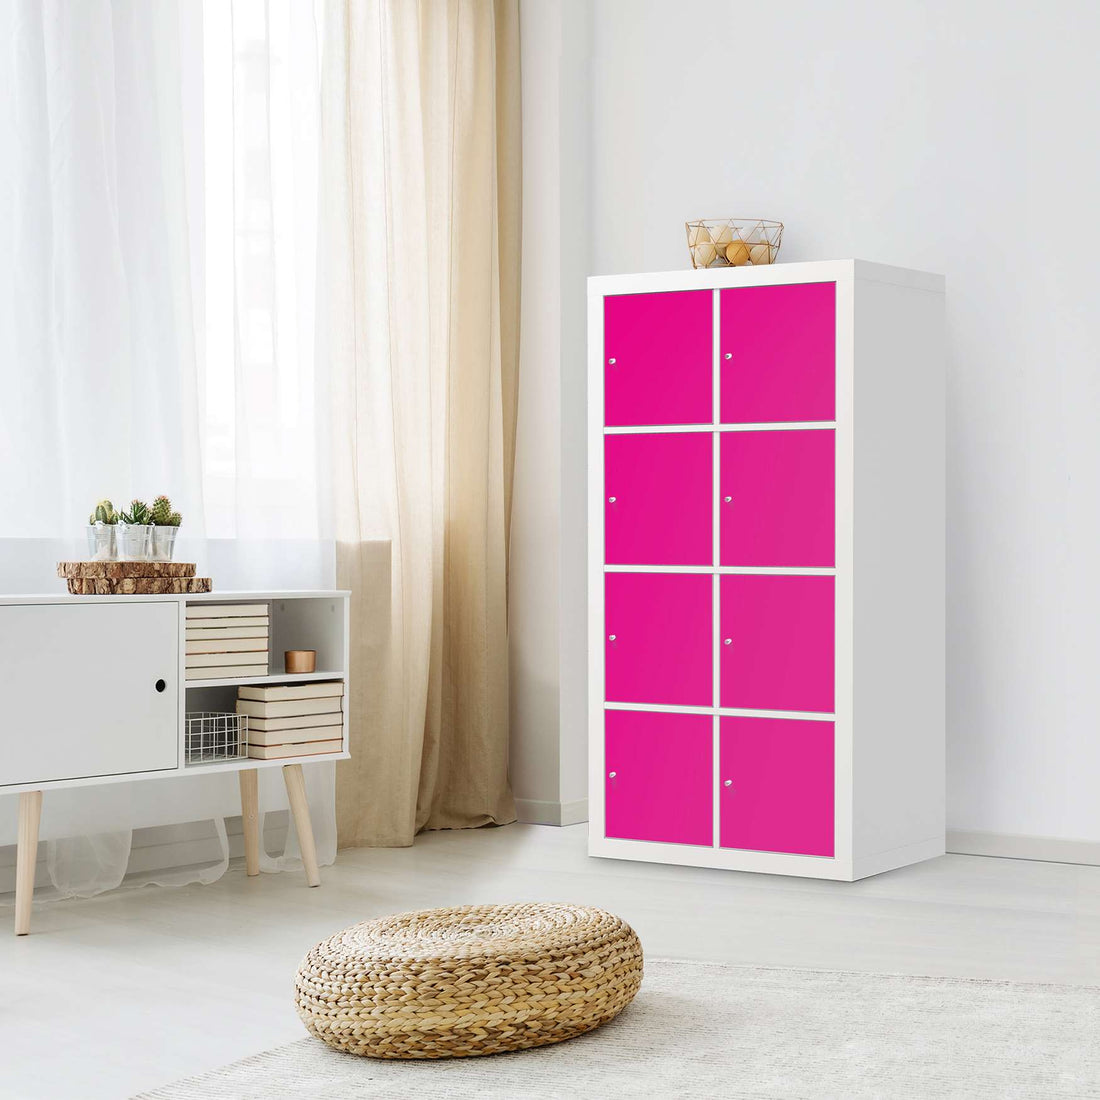 Klebefolie Pink Dark - IKEA Expedit Regal 8 Türen - Wohnzimmer